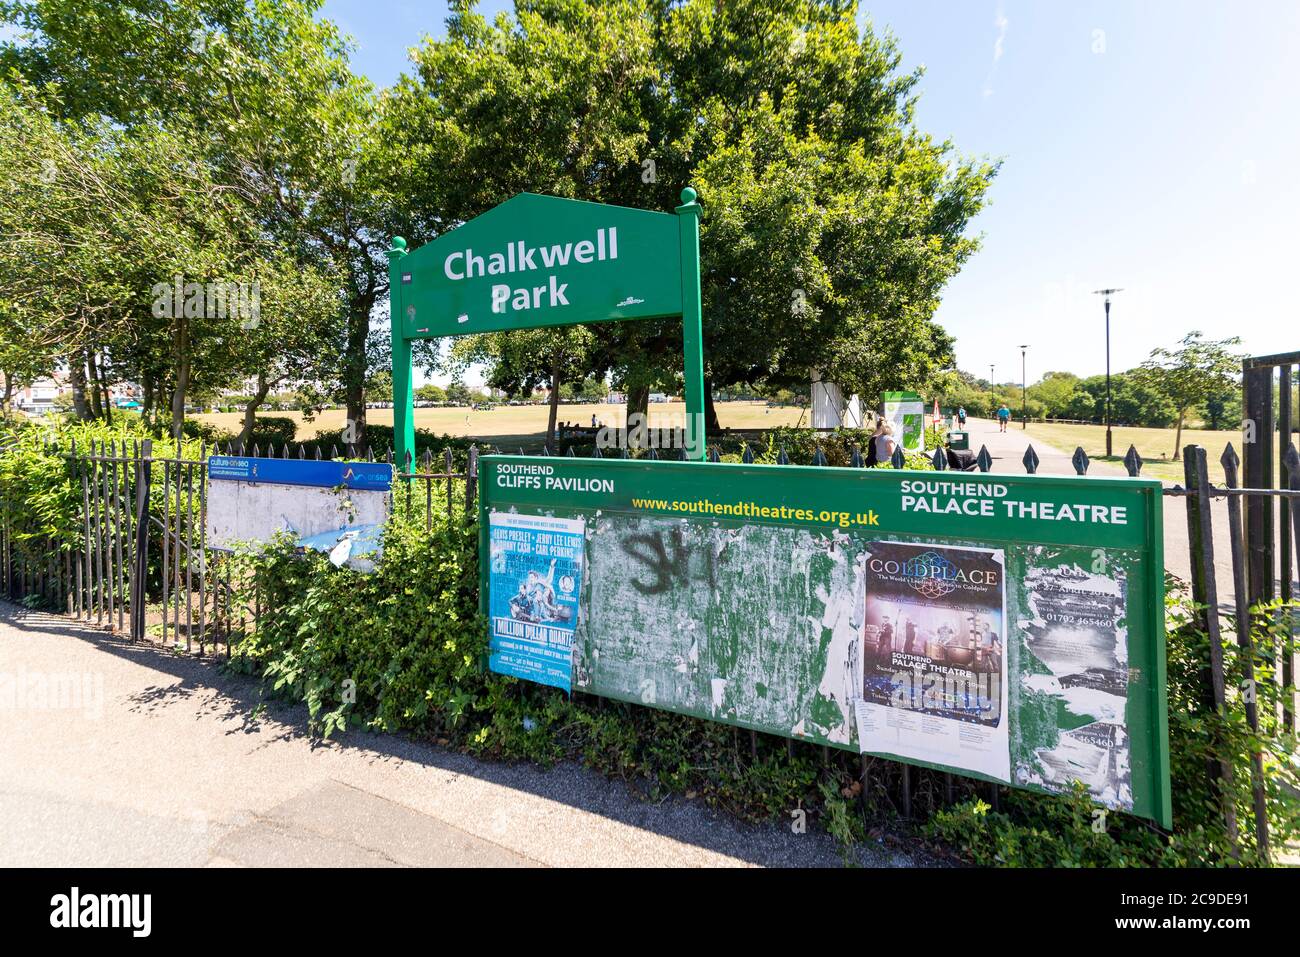 Chalkwell Park in Westcliff on Sea, Southend, Essex, Großbritannien. Southend on Sea Borough Council Grünfläche in einem städtischen Gebiet. Schild am Eingang Stockfoto